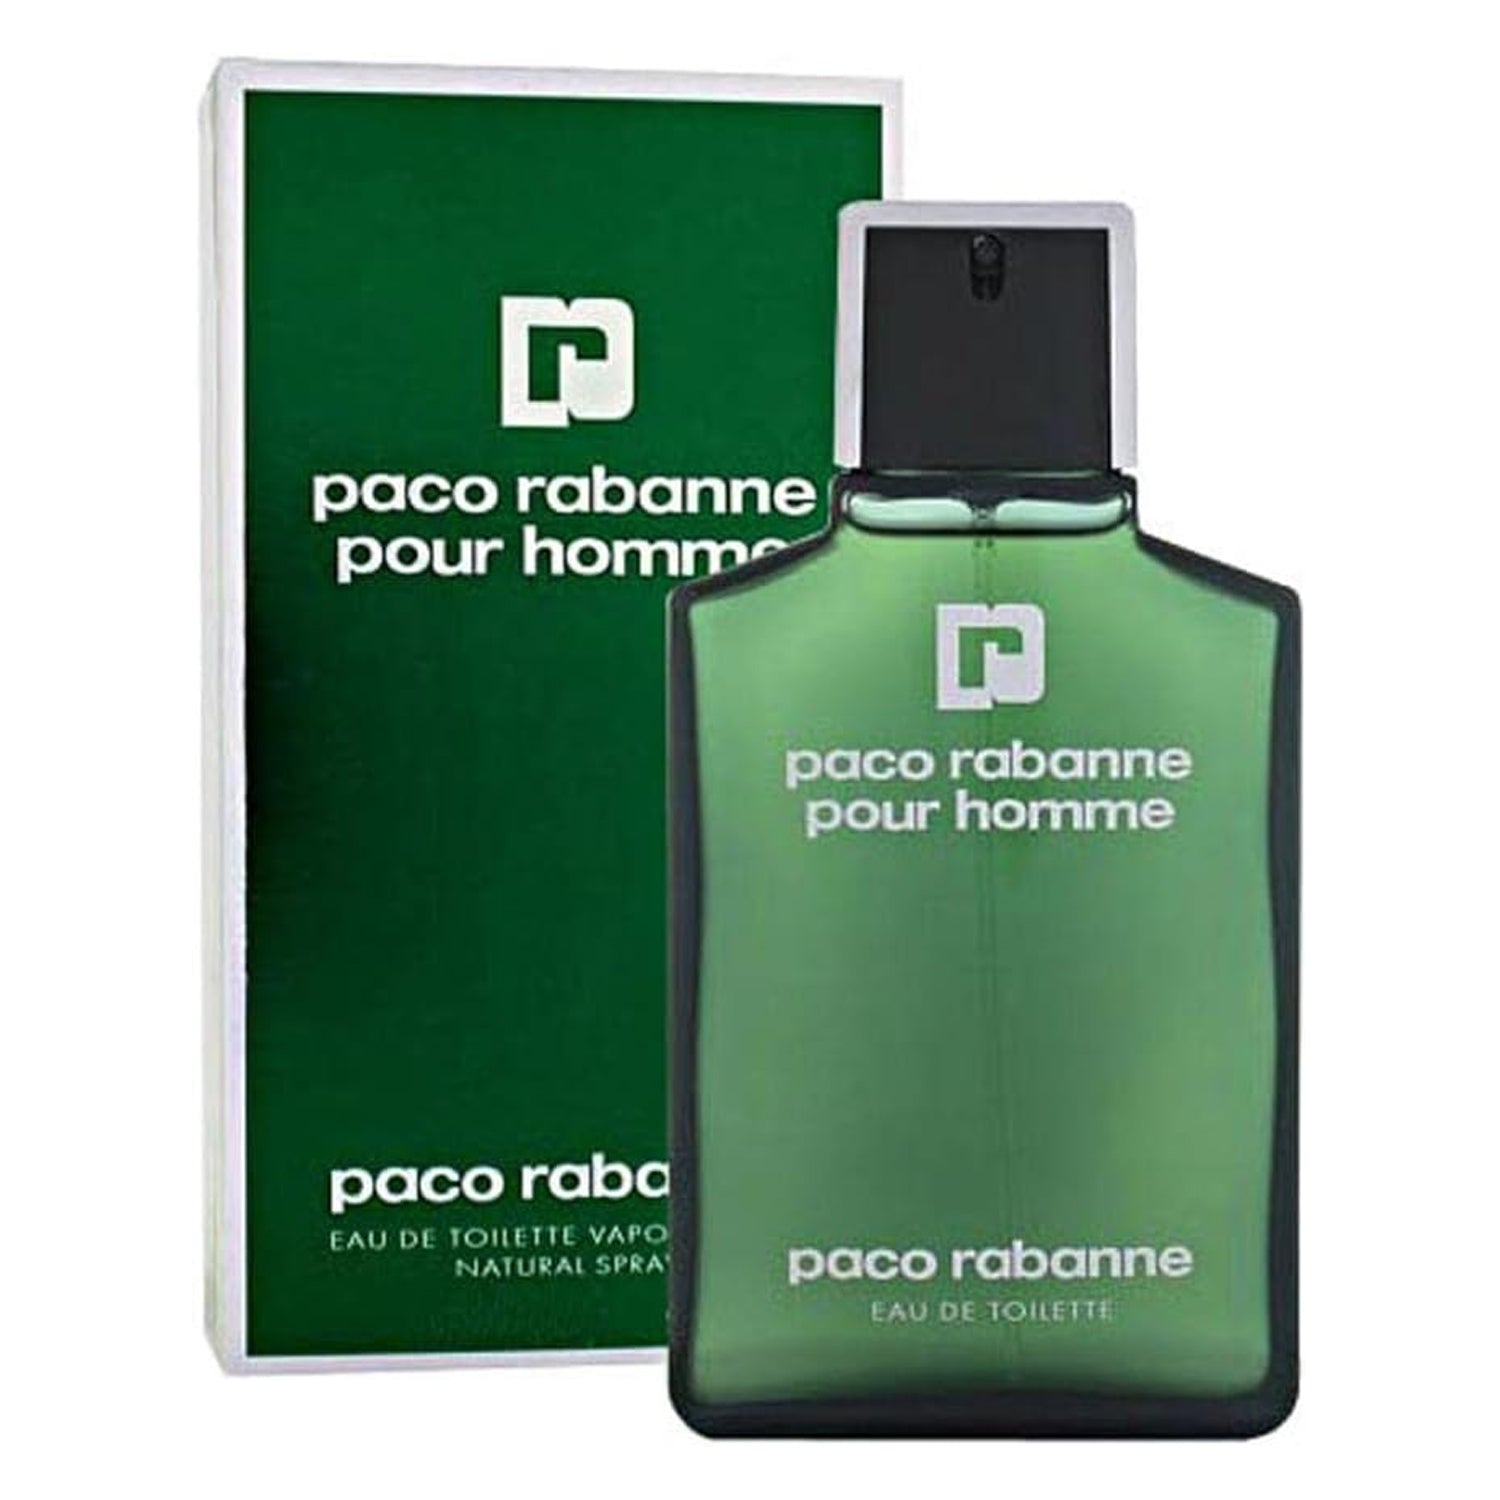 Paco Rabanne Pour Homme 100 ml Eau De Toilette Spray for Men